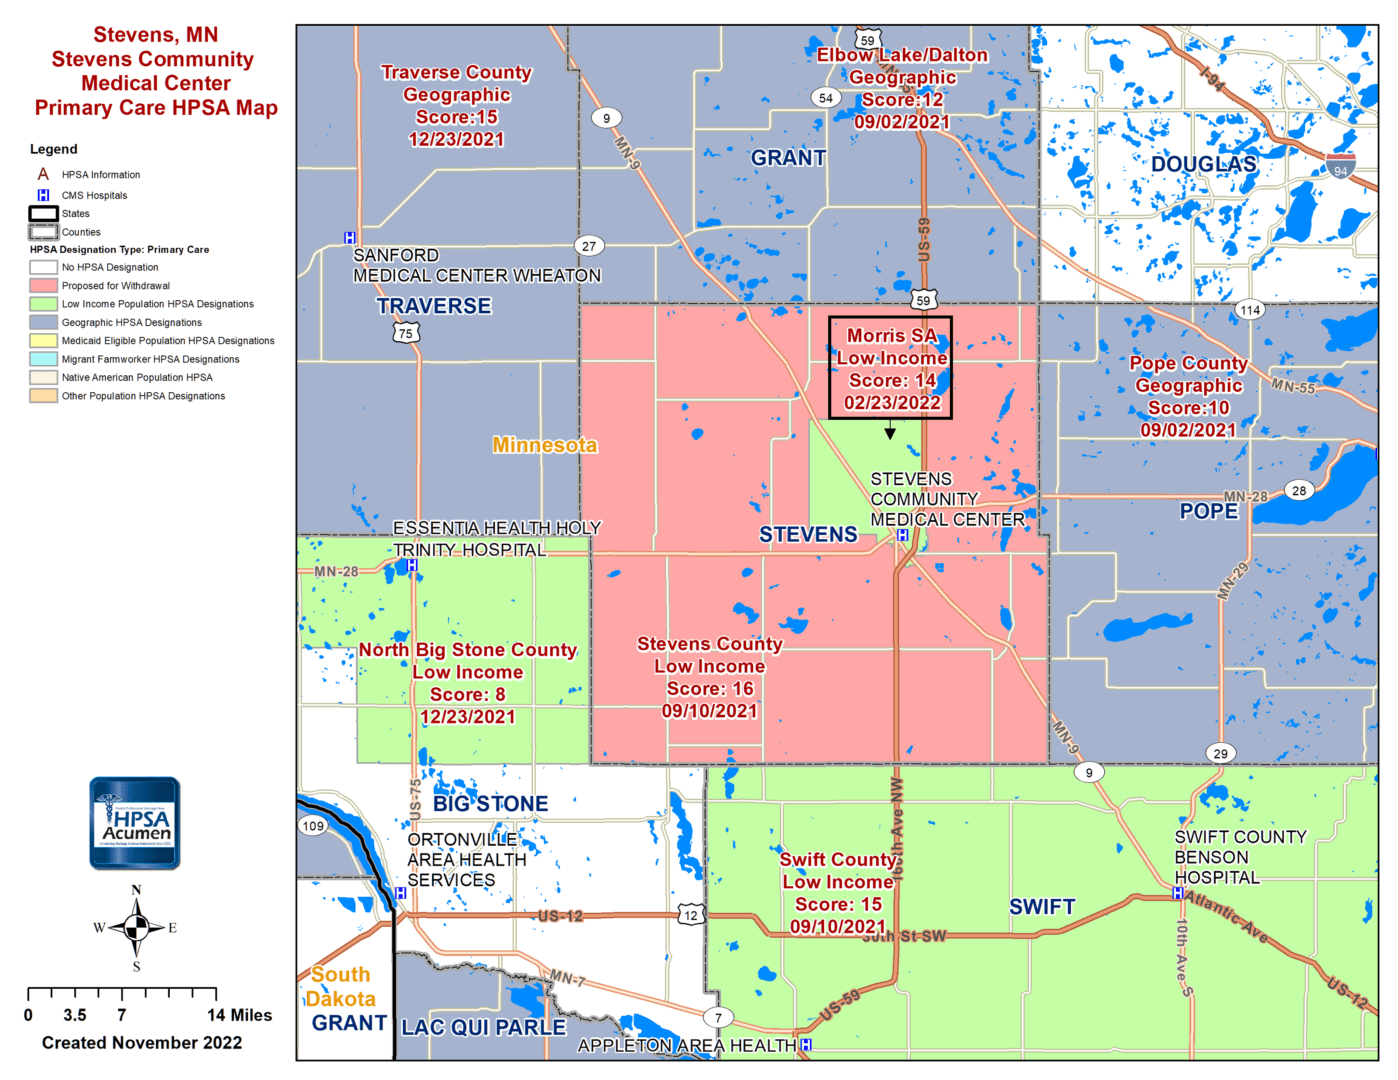 Stevens, MN PC HPSA Map v2